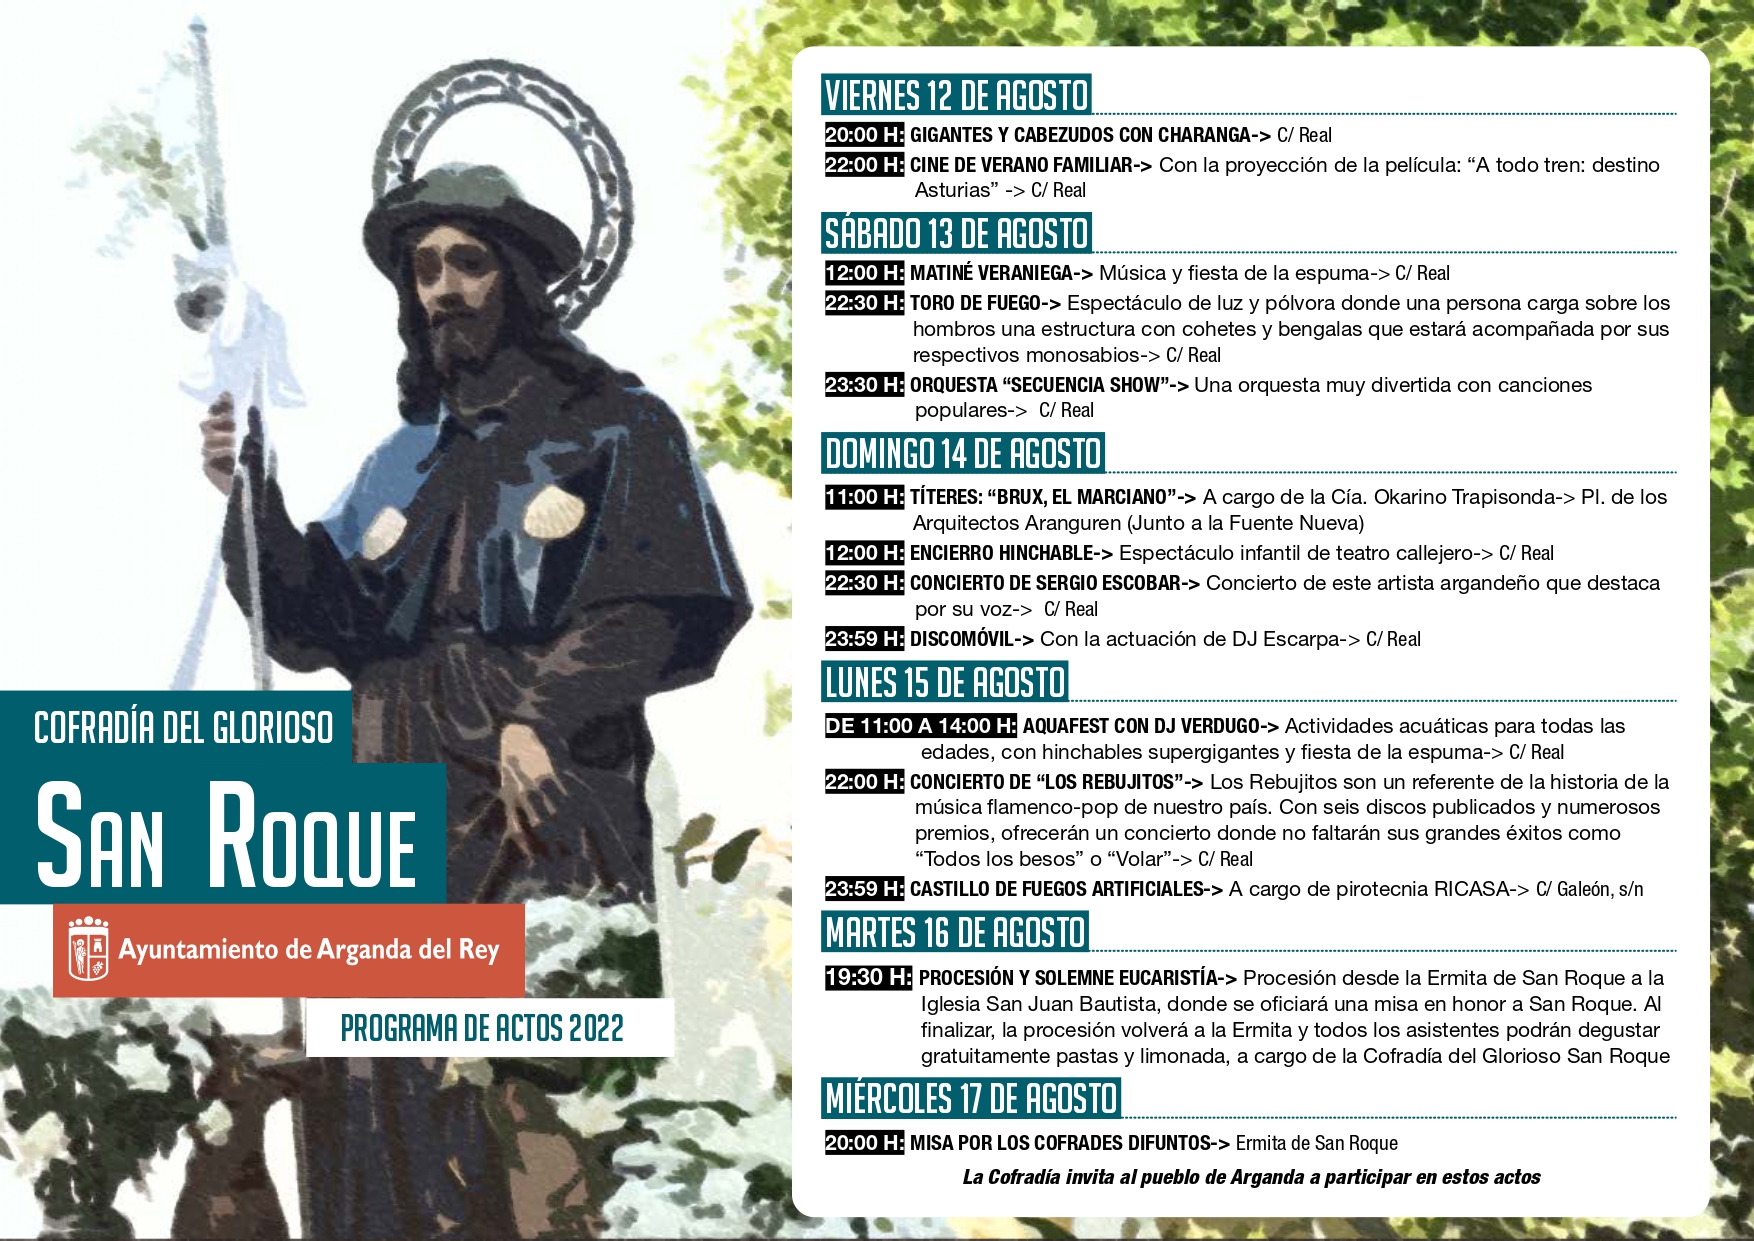 Las fiestas de San Roque volverán a celebrarse del 12 al 17 de agosto